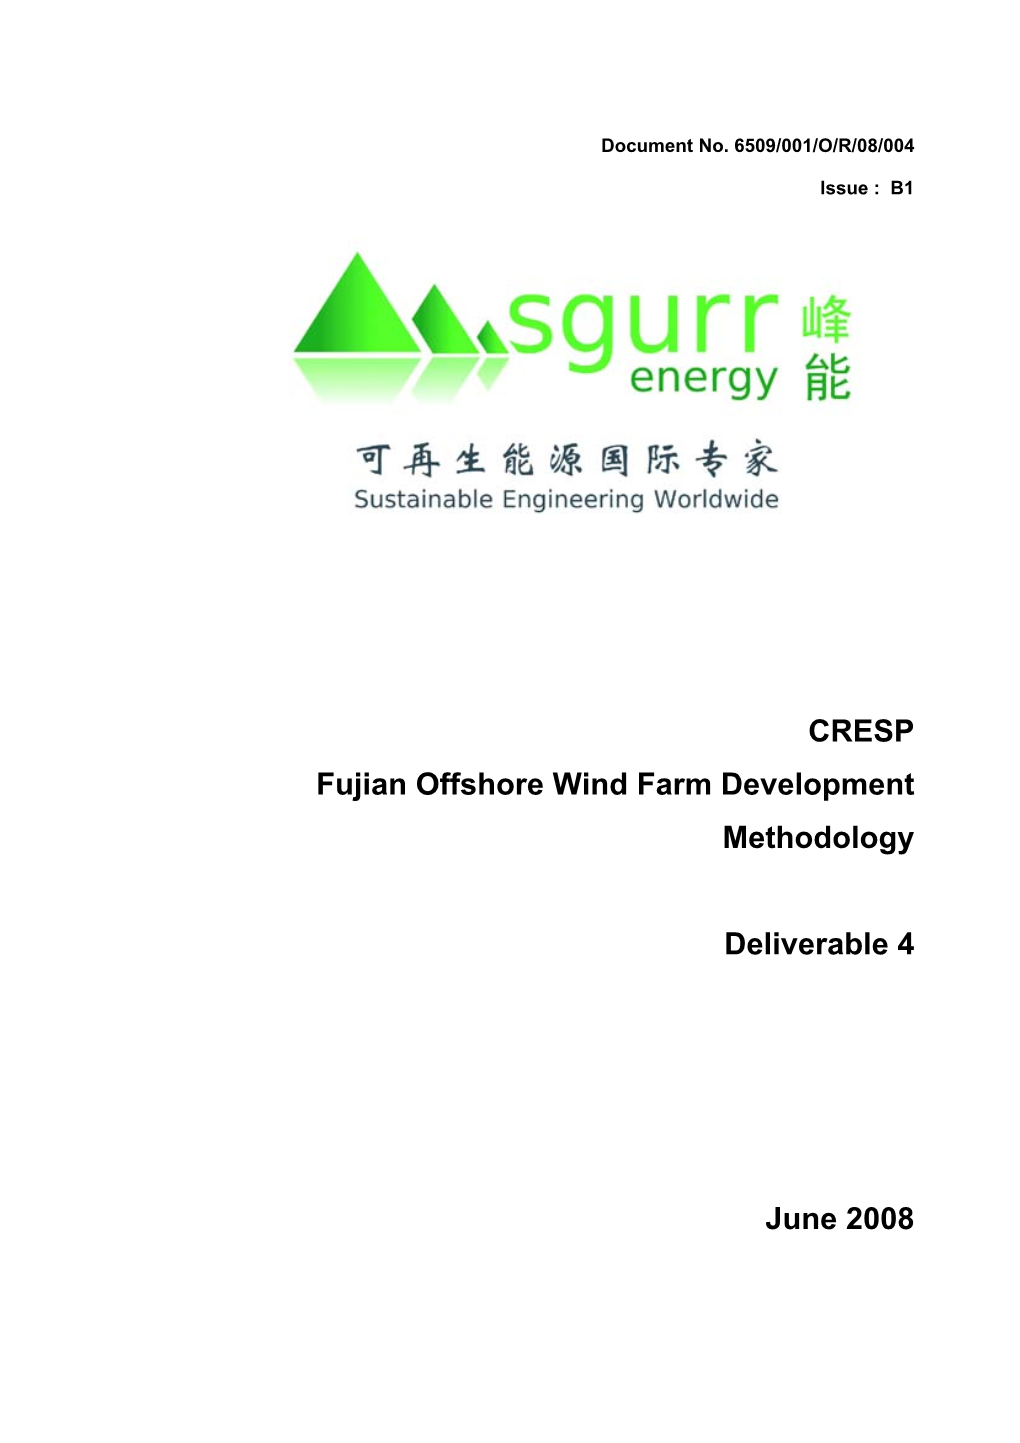 CRESP Fujian Offshore Wind Methodology